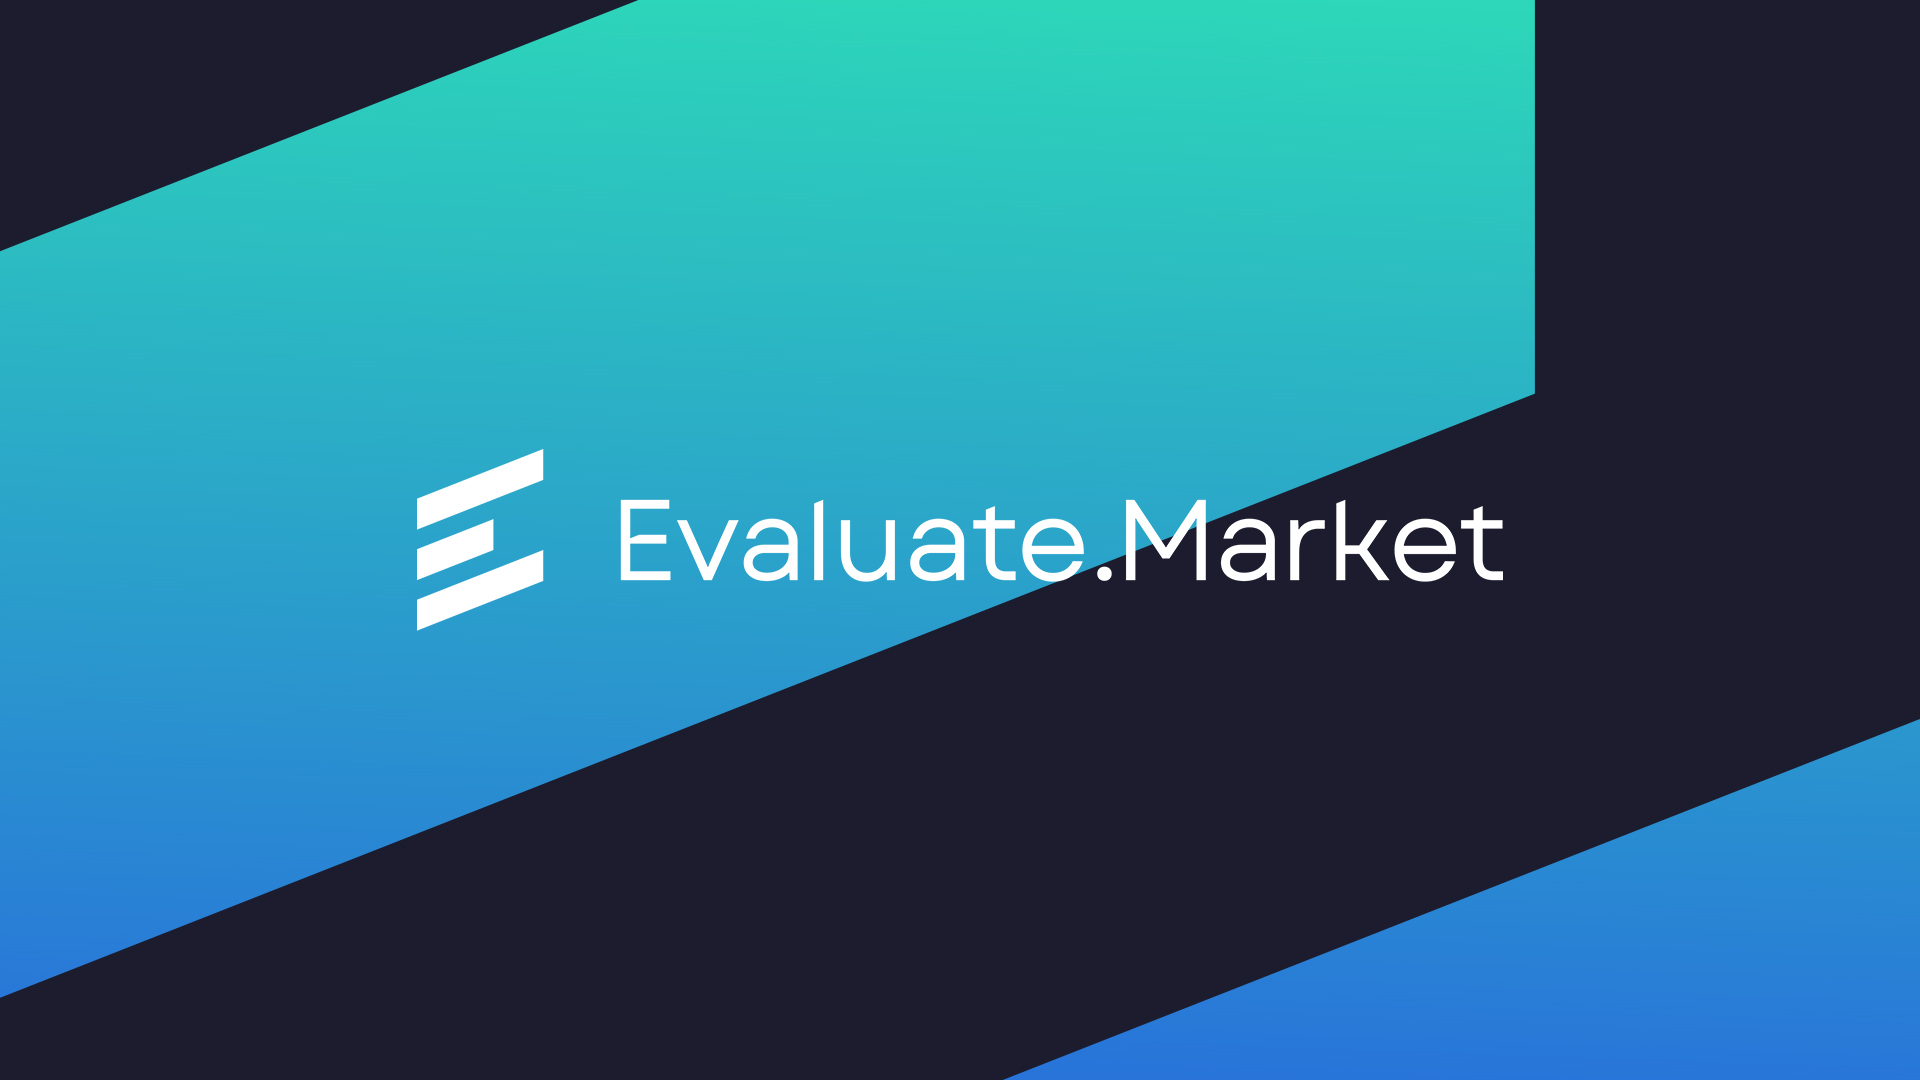 Evaluate Market Banner Image